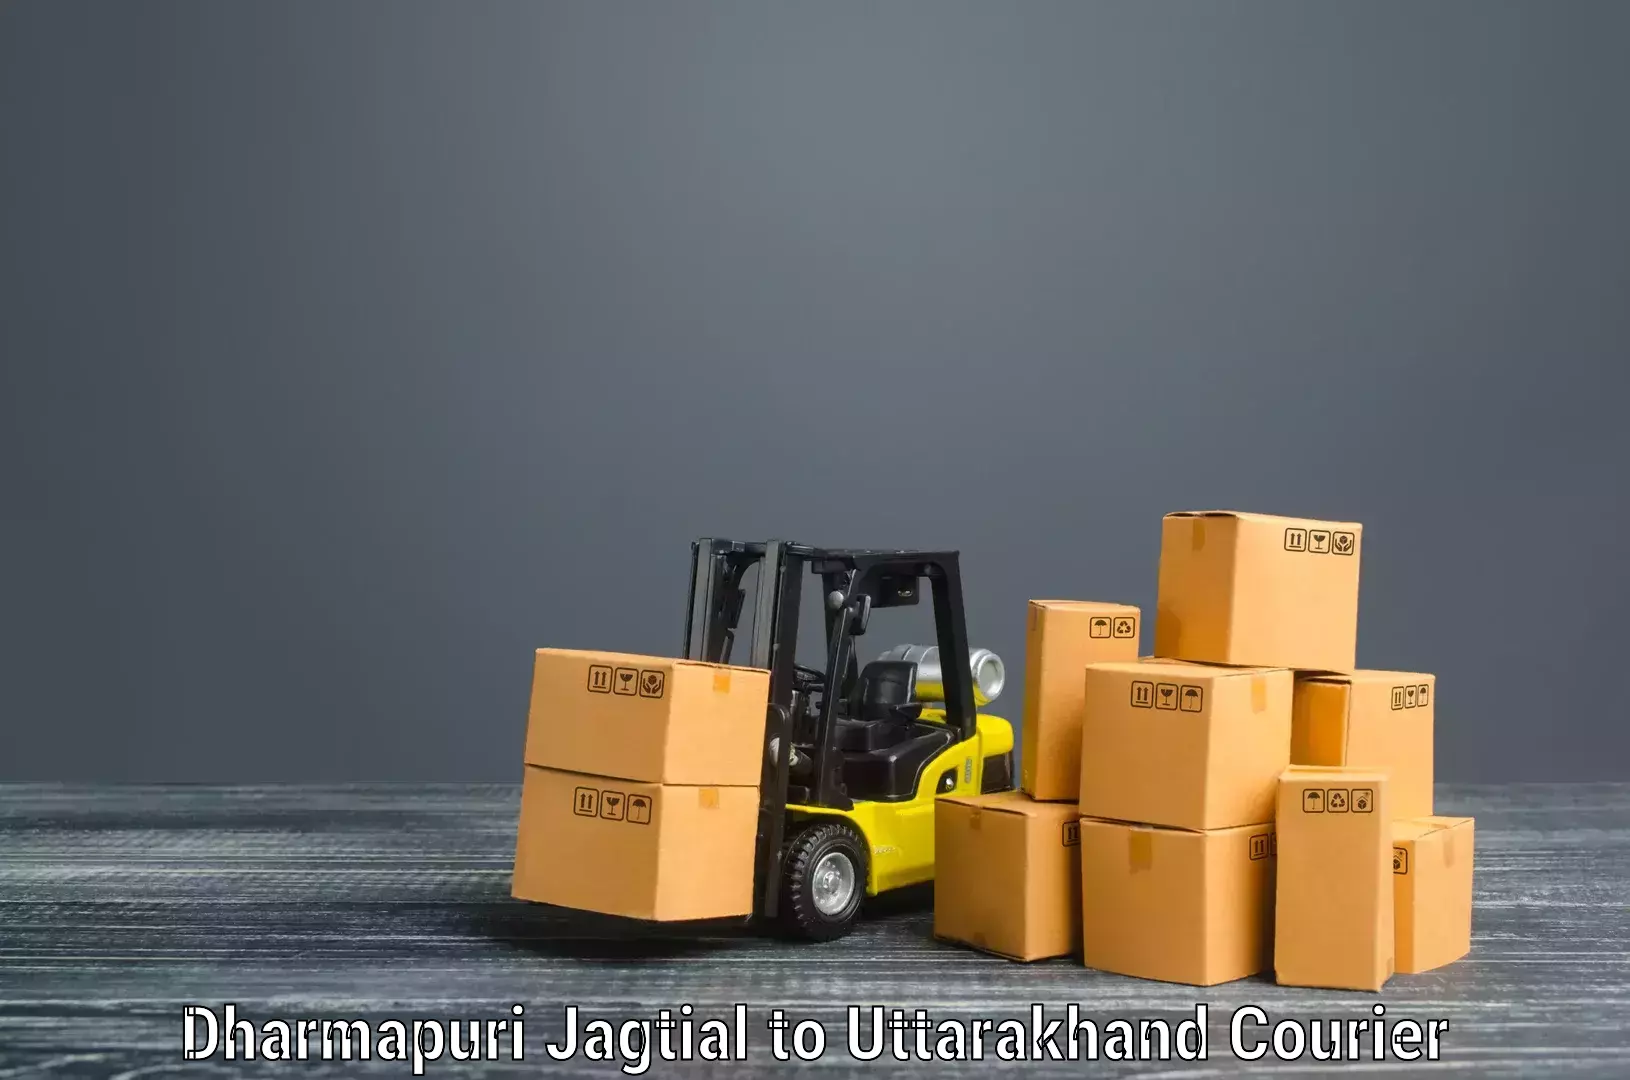 Reliable movers Dharmapuri Jagtial to Roorkee